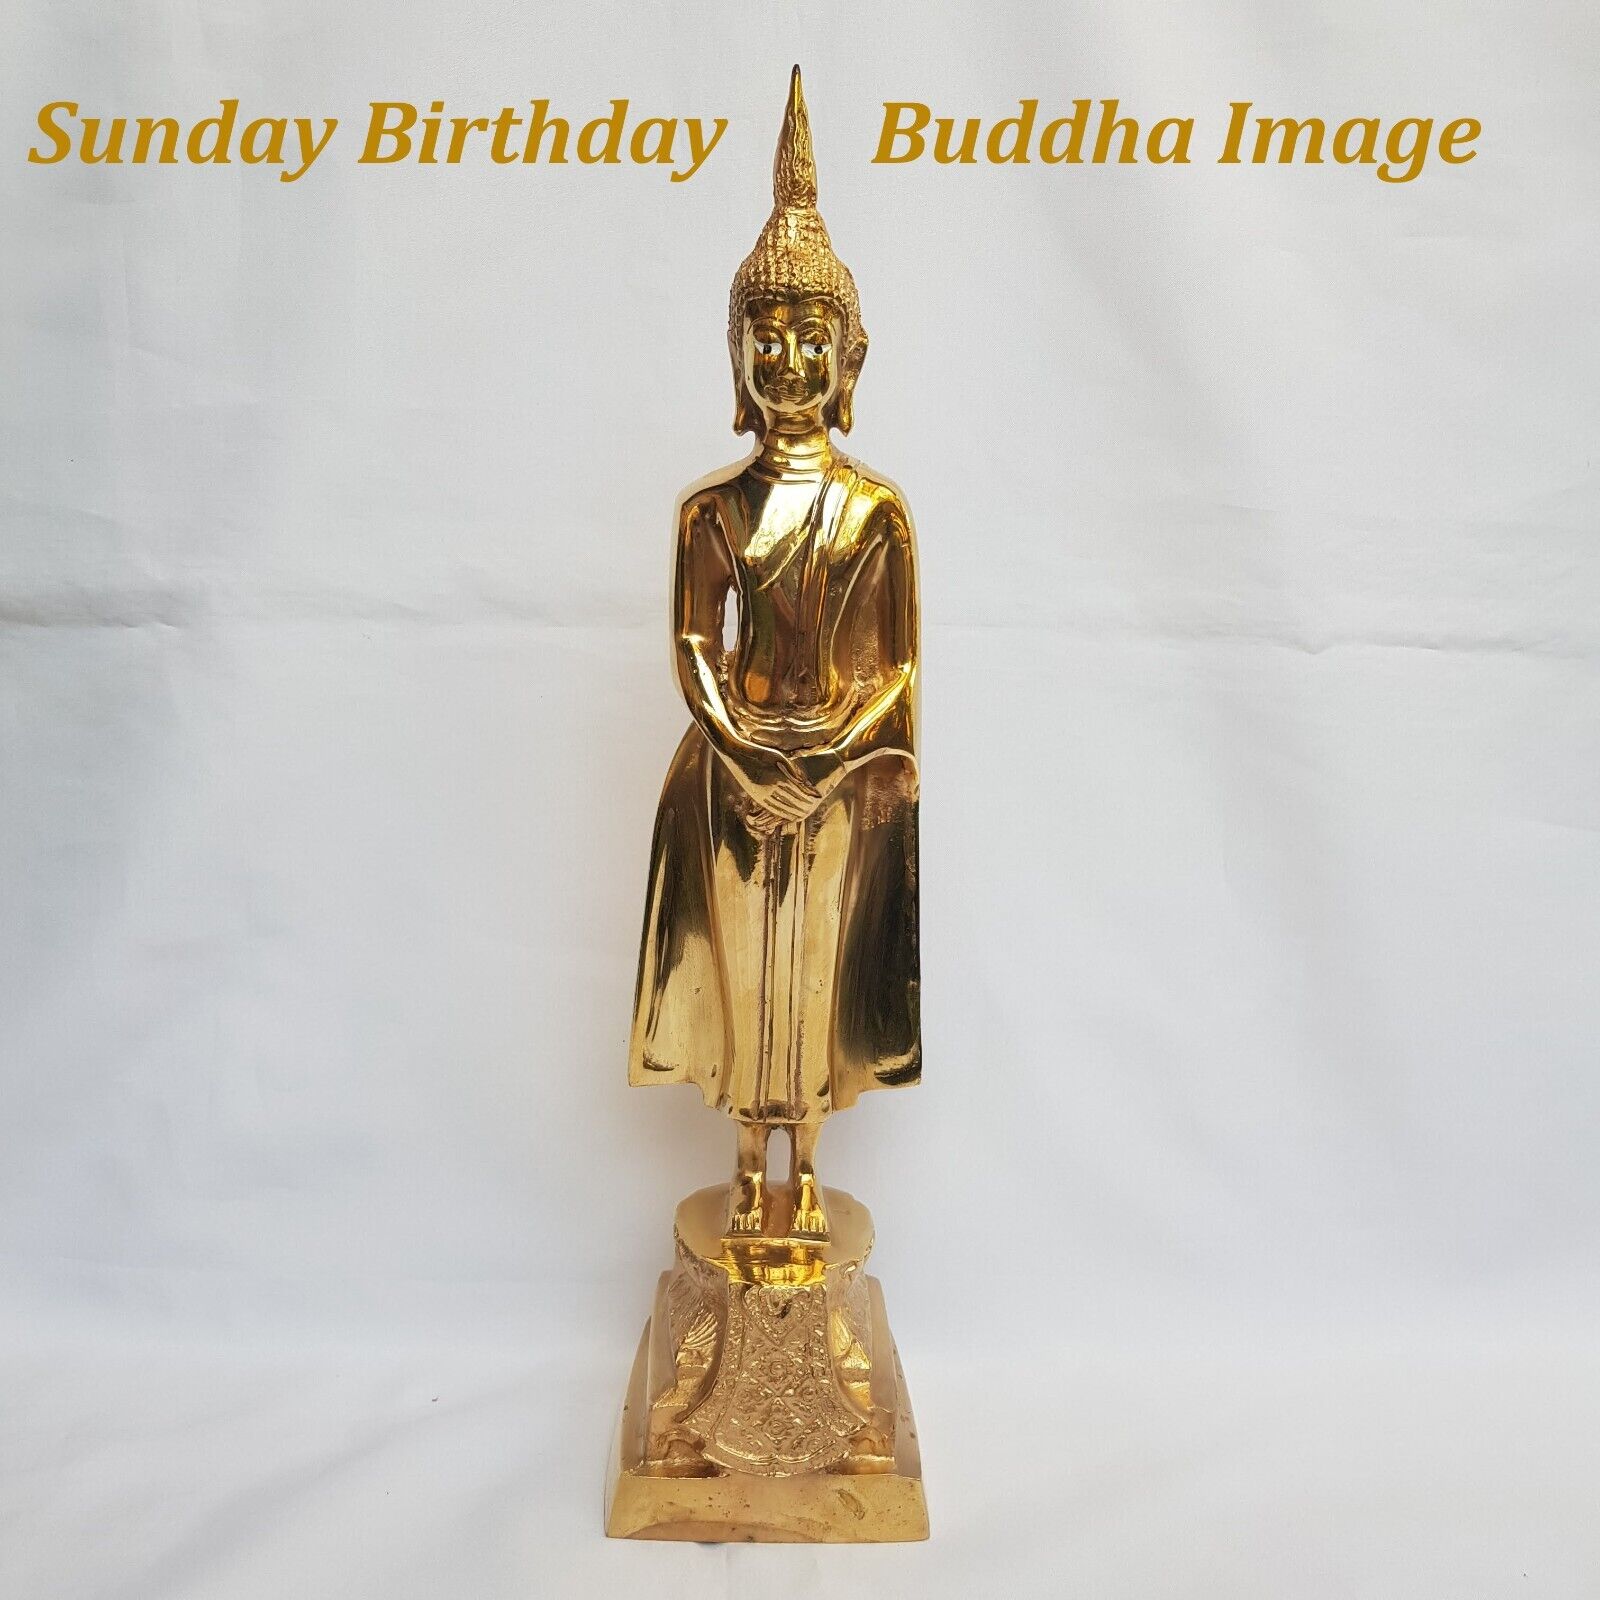 Sunday Birthday Buddha Image Brass Statue Standing Open Eye Watching Bodhi Tree